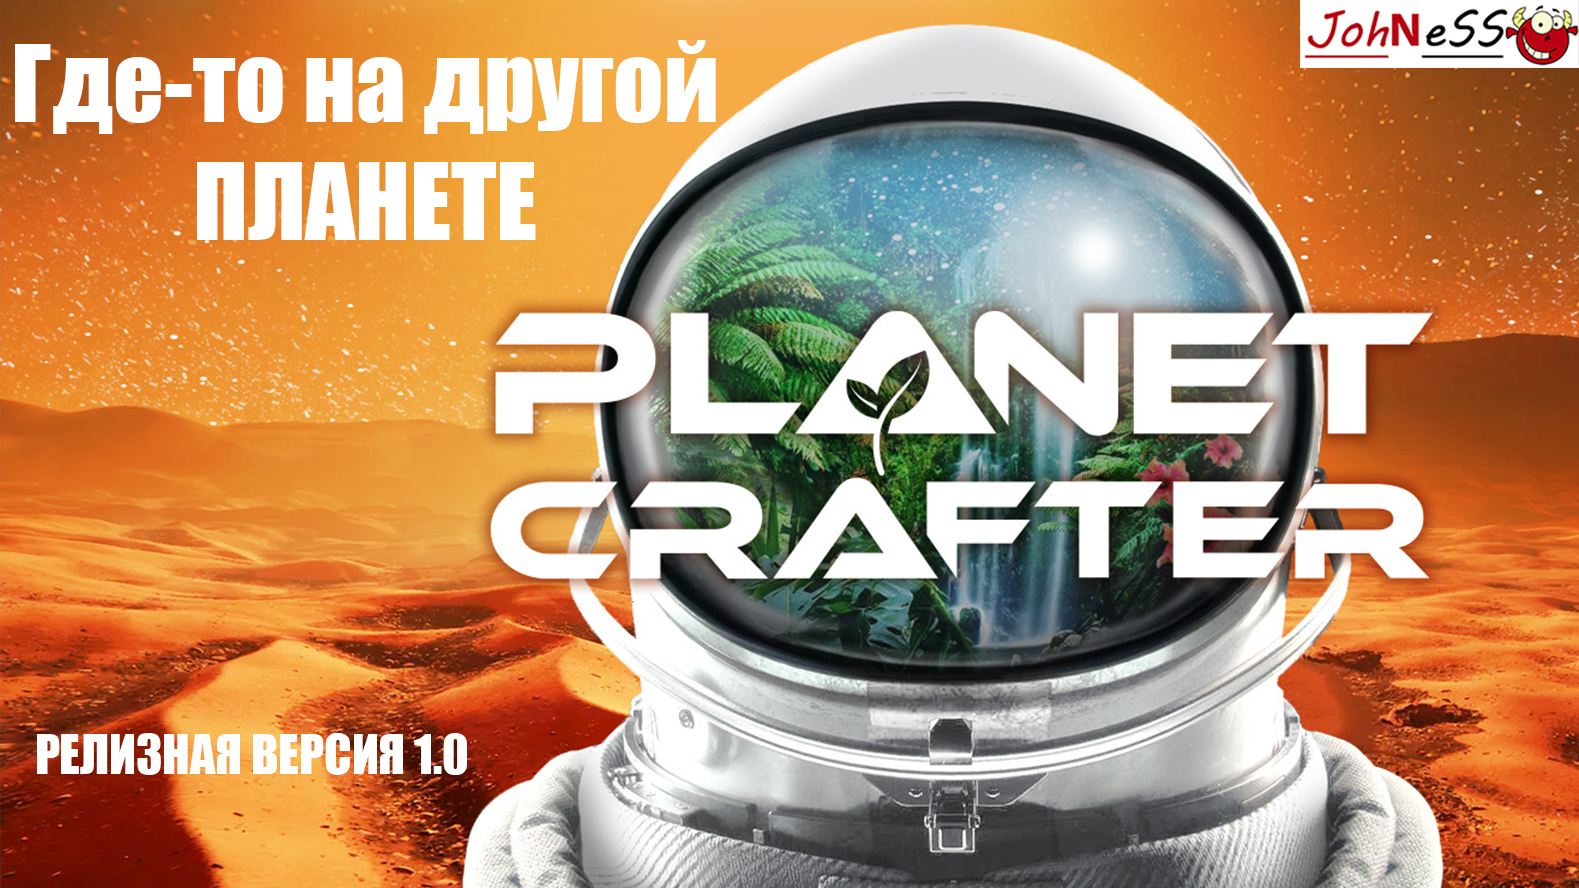 КОСМОС НАС ЖДЕТ - ИНОПЛАНЕТНАЯ ВЫЖИВАЛКА ВЫШЛА В РЕЛИЗ / The Planet Crafter #1